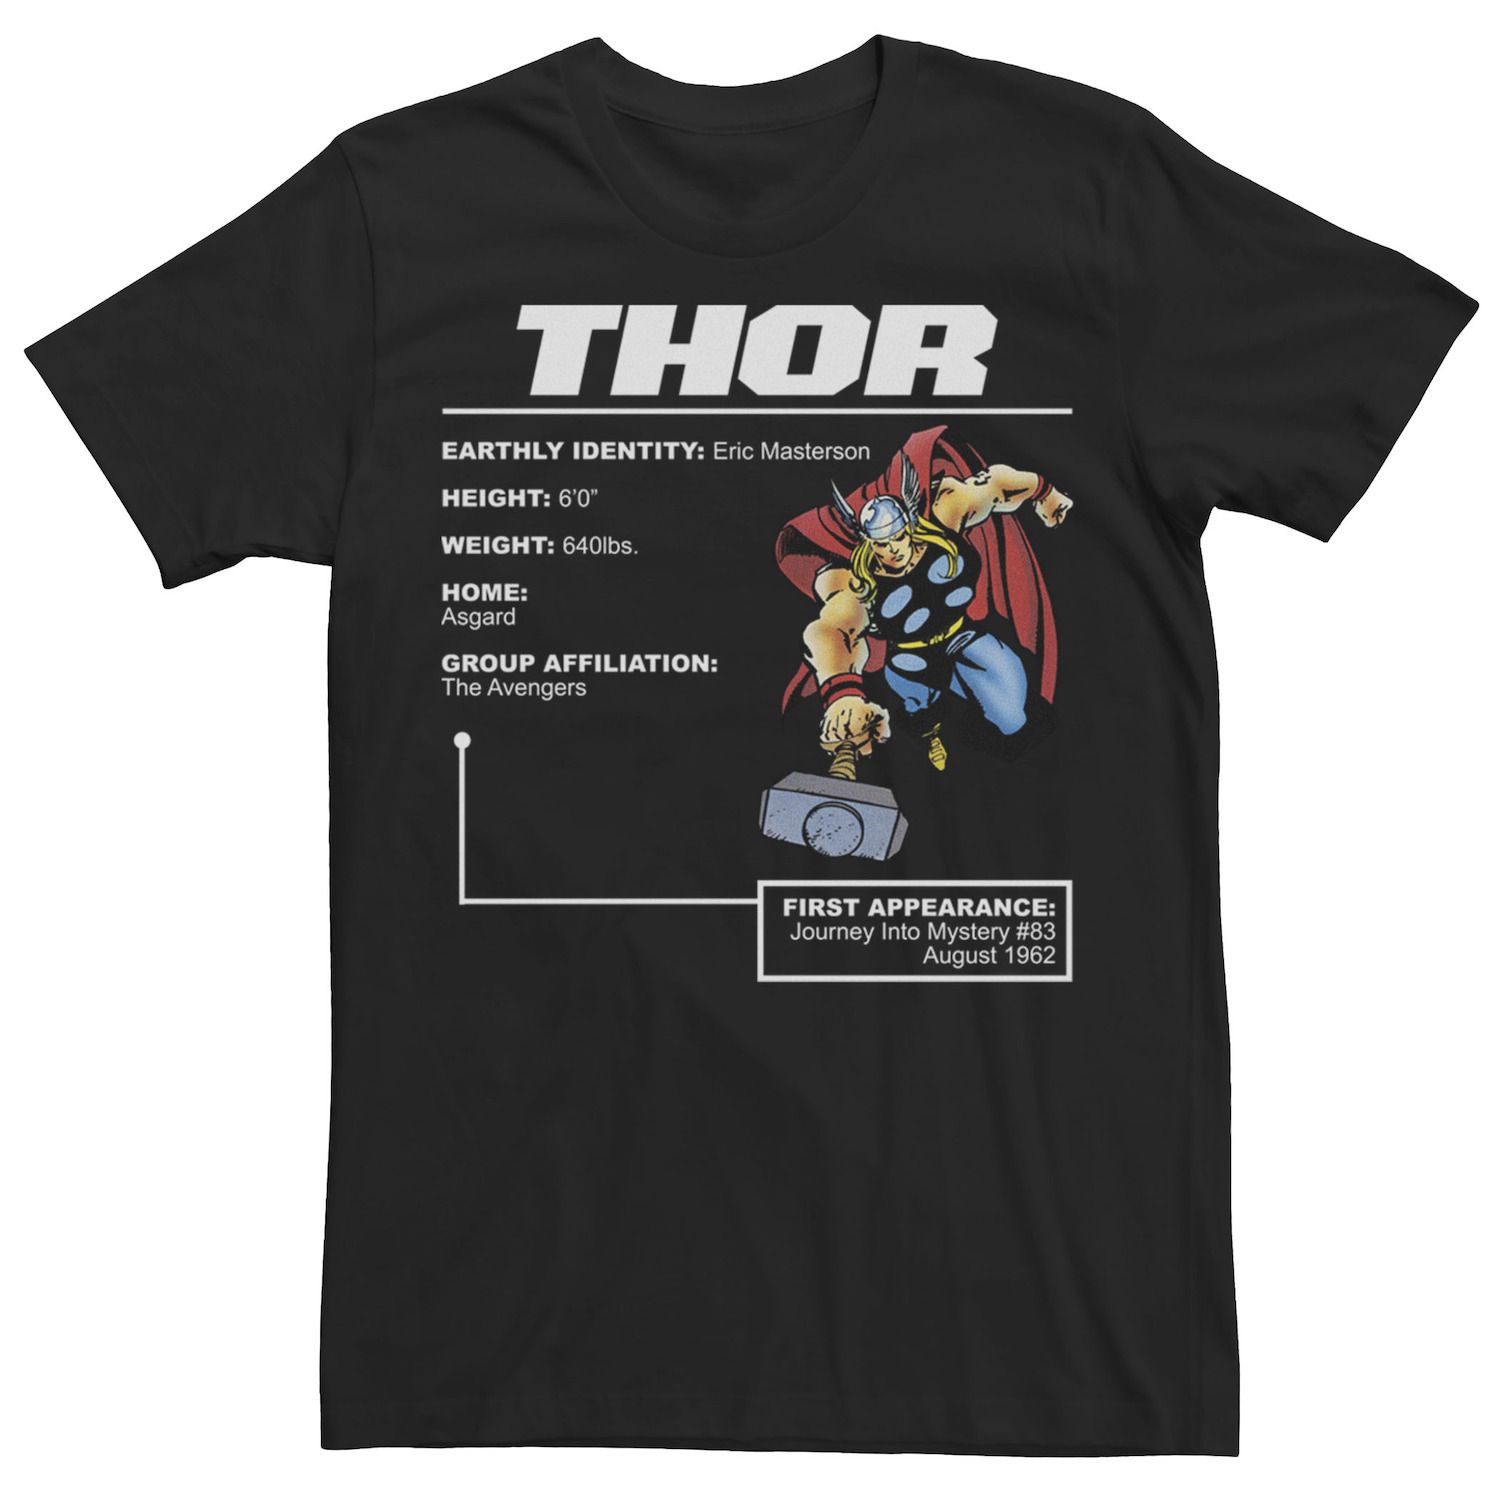 Мужская футболка с плакатом и графикой Thor Stats Marvel